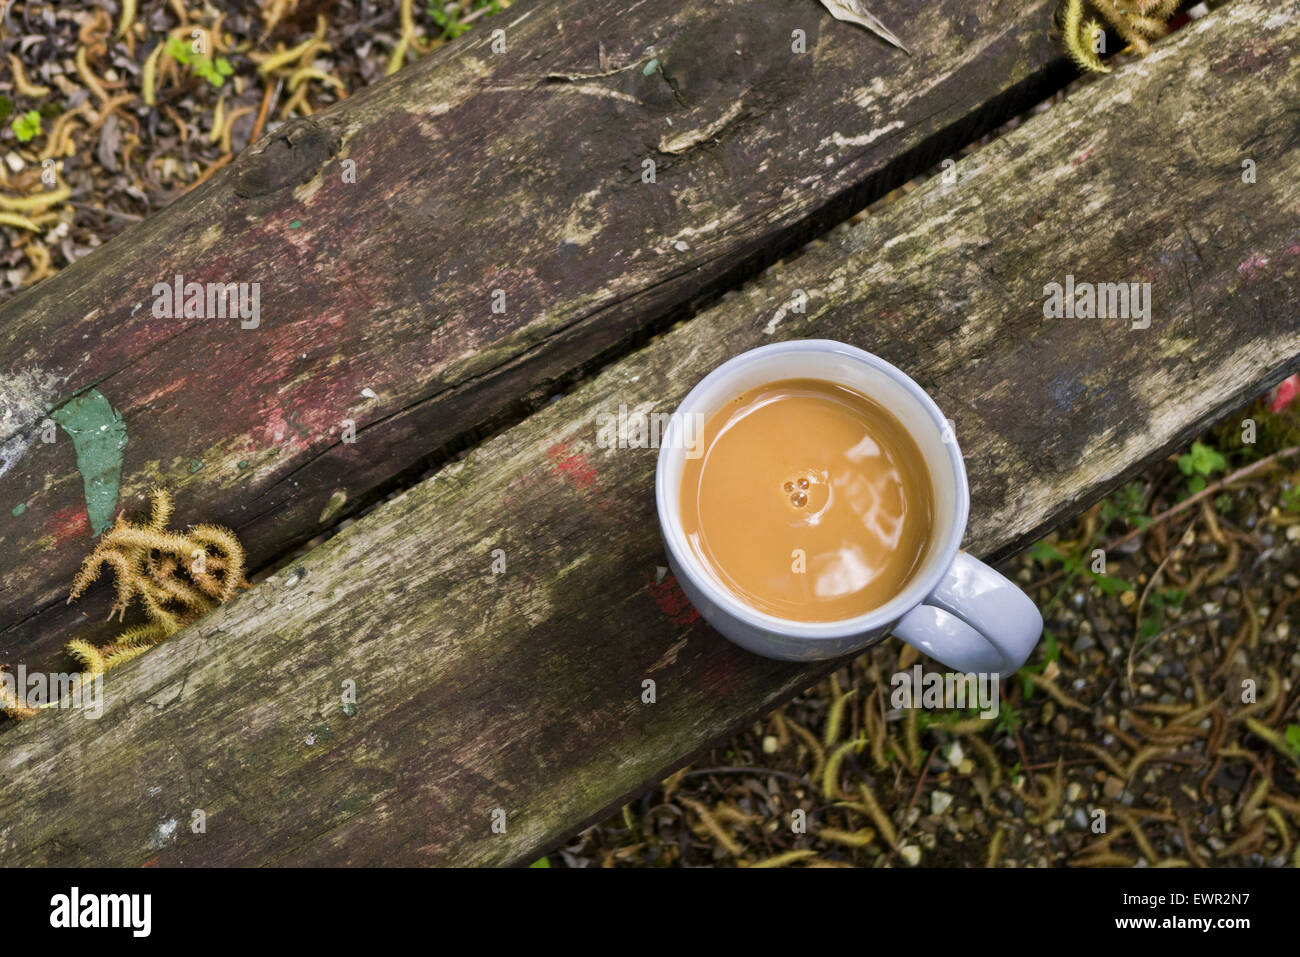 Mug of tea on a wooden garden bench. Stock Photo